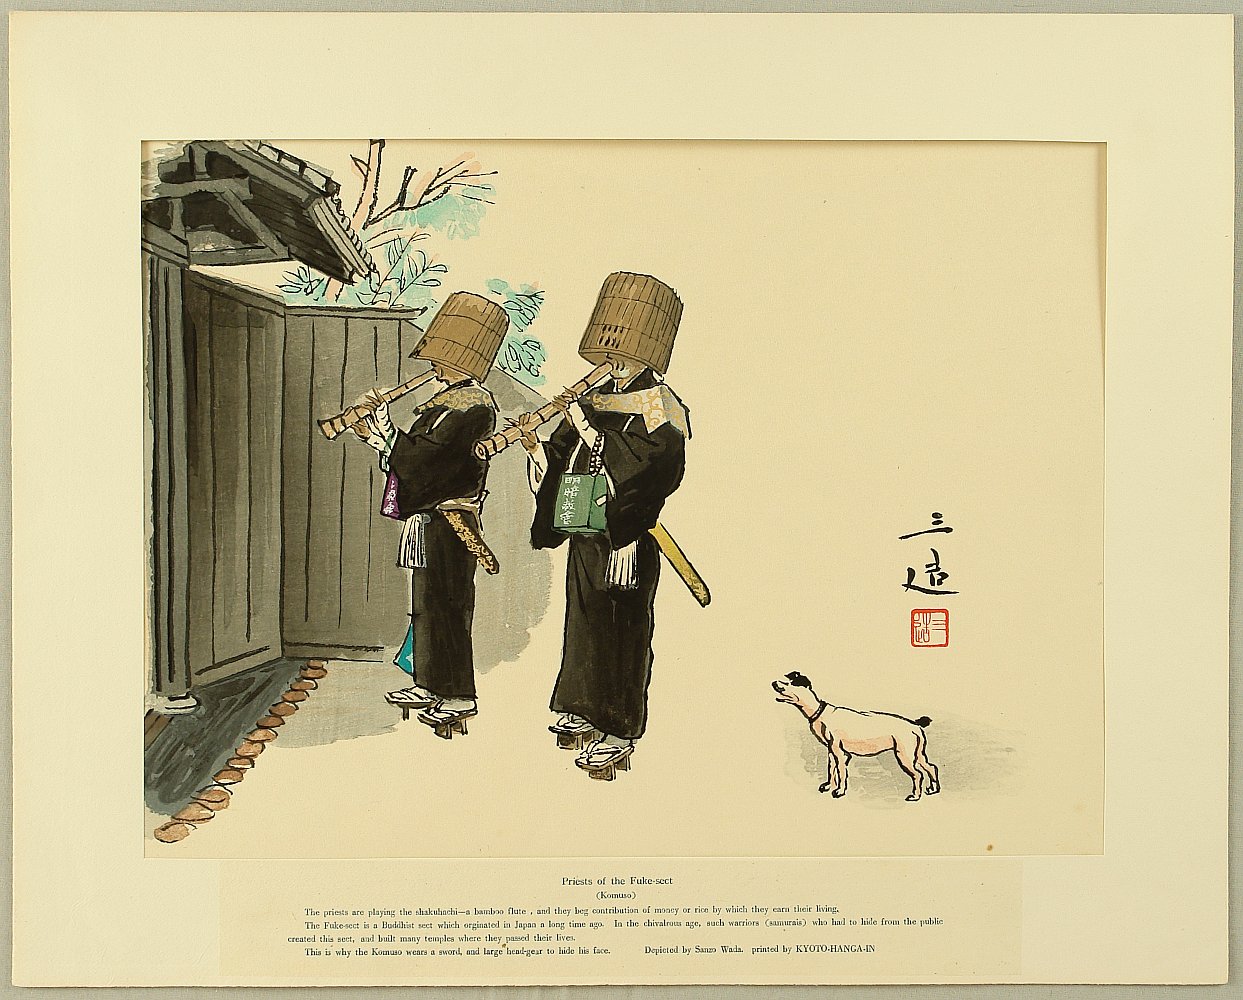 和田三造: Sketches of Occupations in Showa Era - Priests of Fuke 